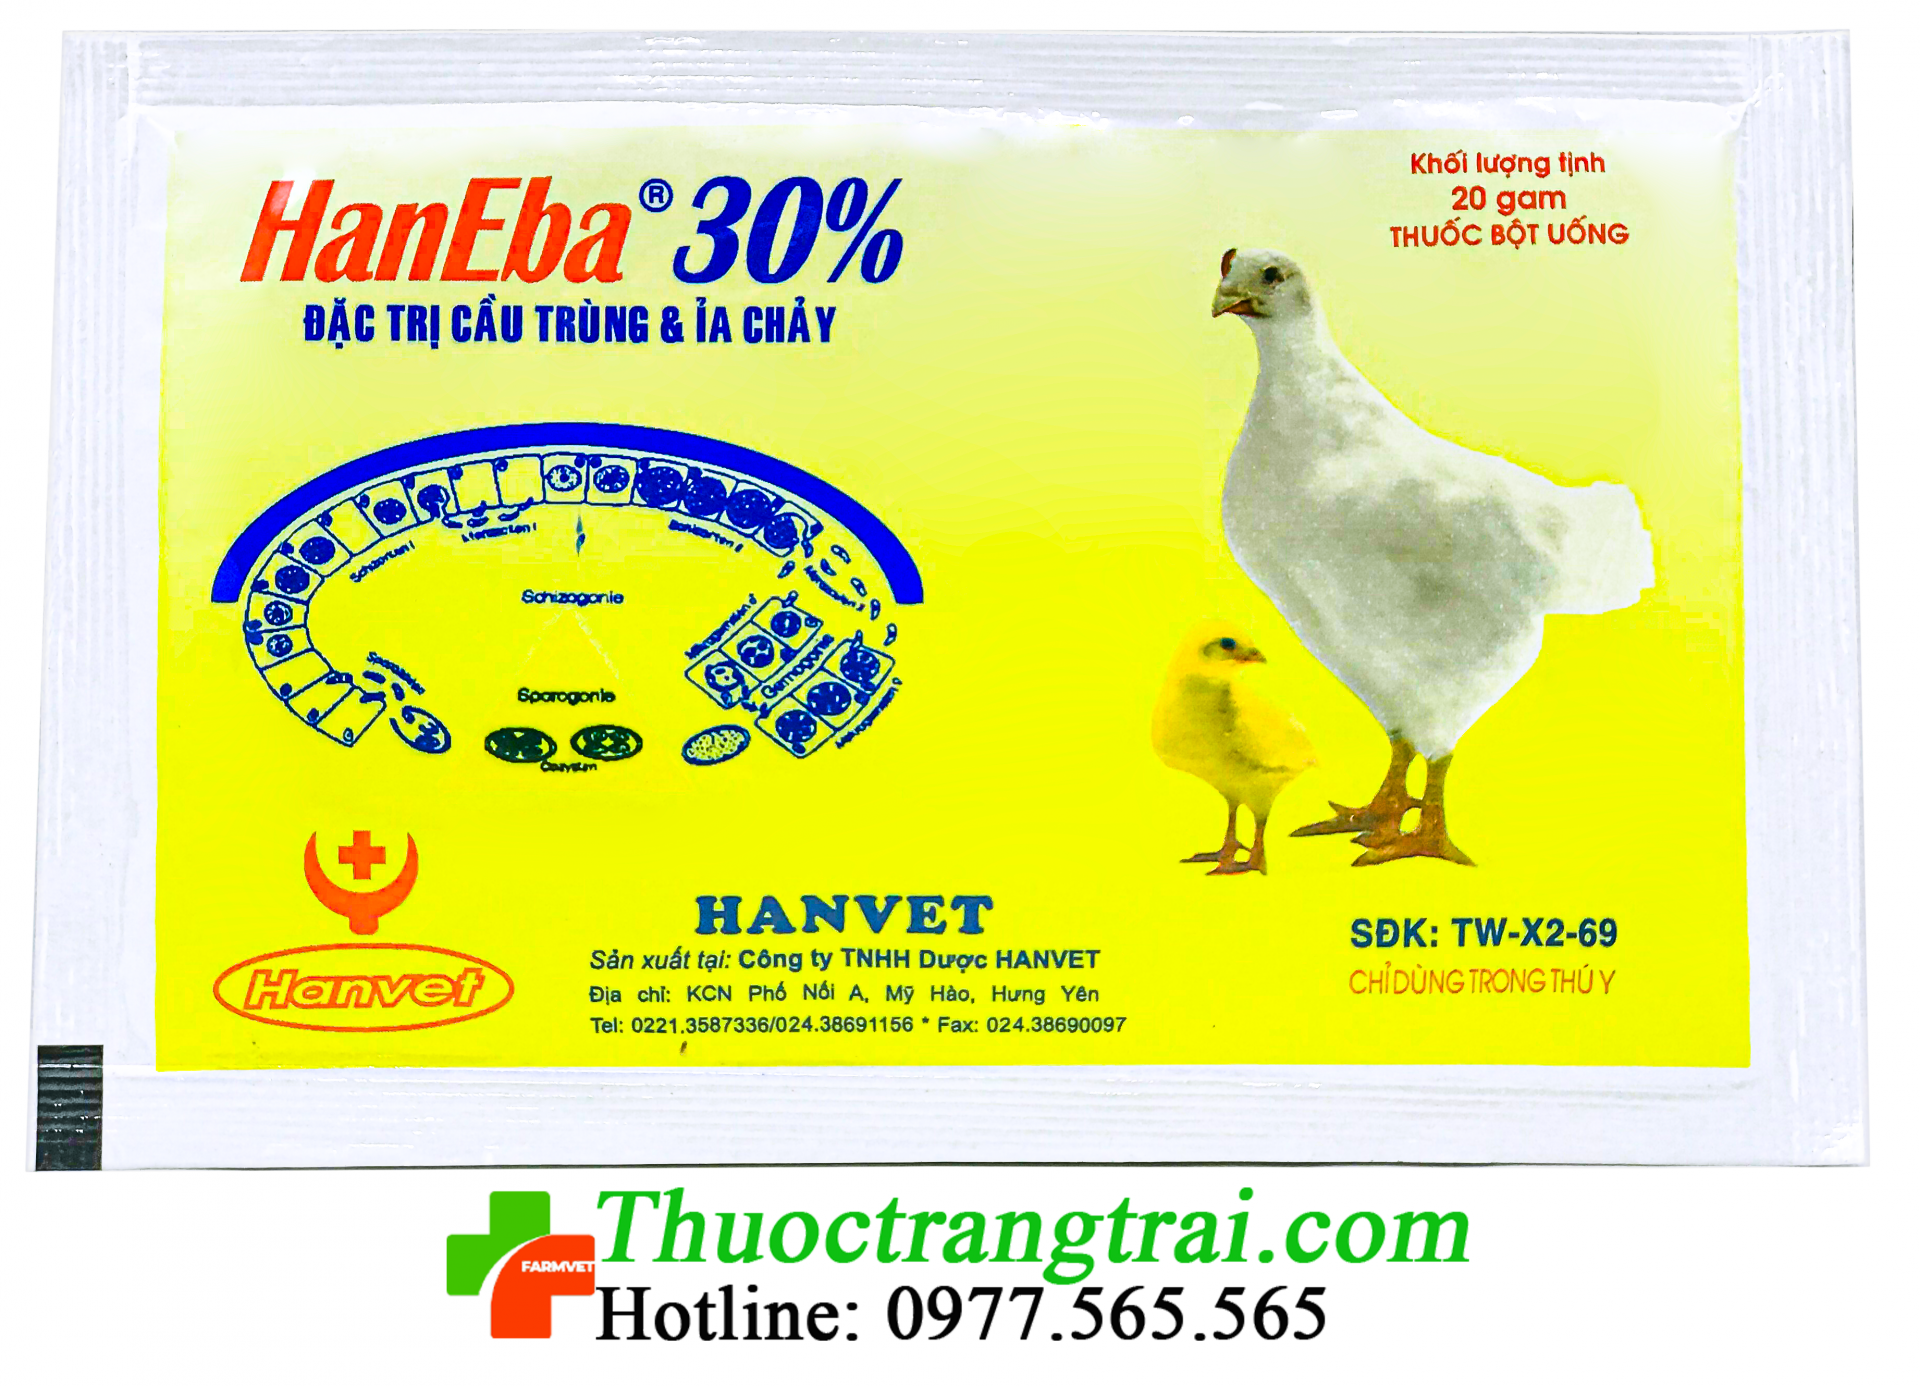 haneba-30-1631268737.png